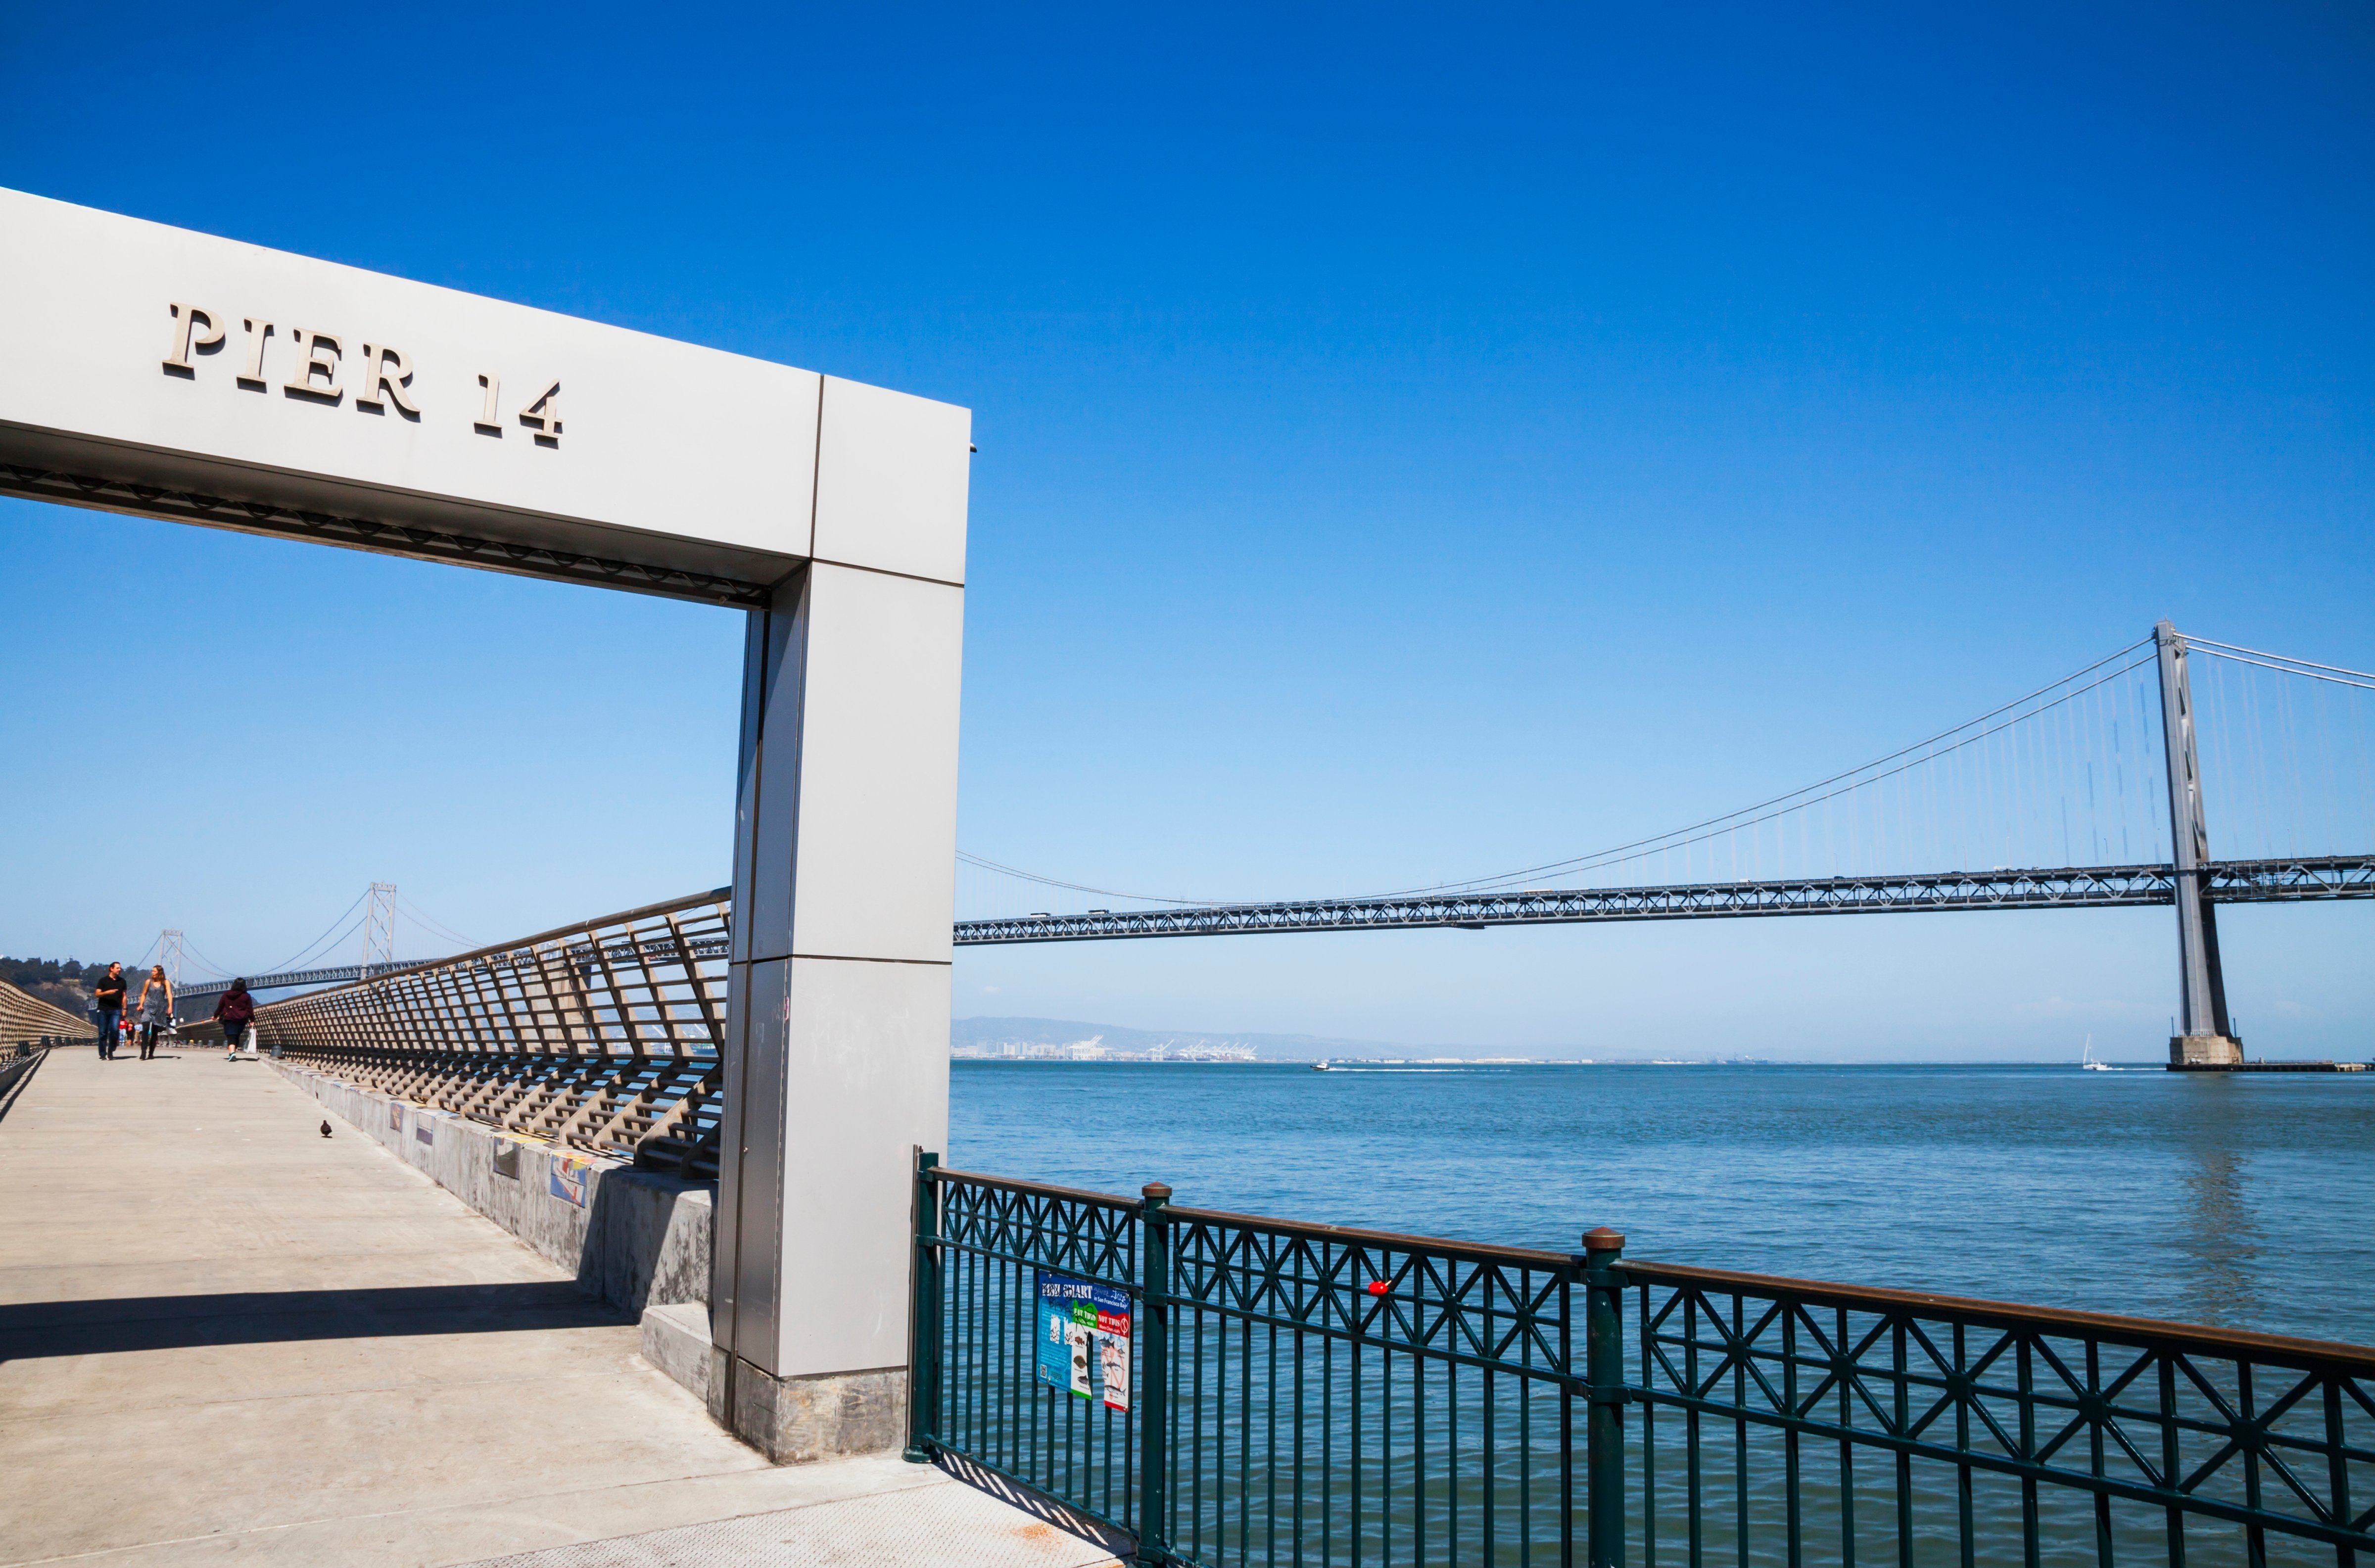 A view of the Oakland Bay Bridge from Pier 14; San Francisco, California, USA